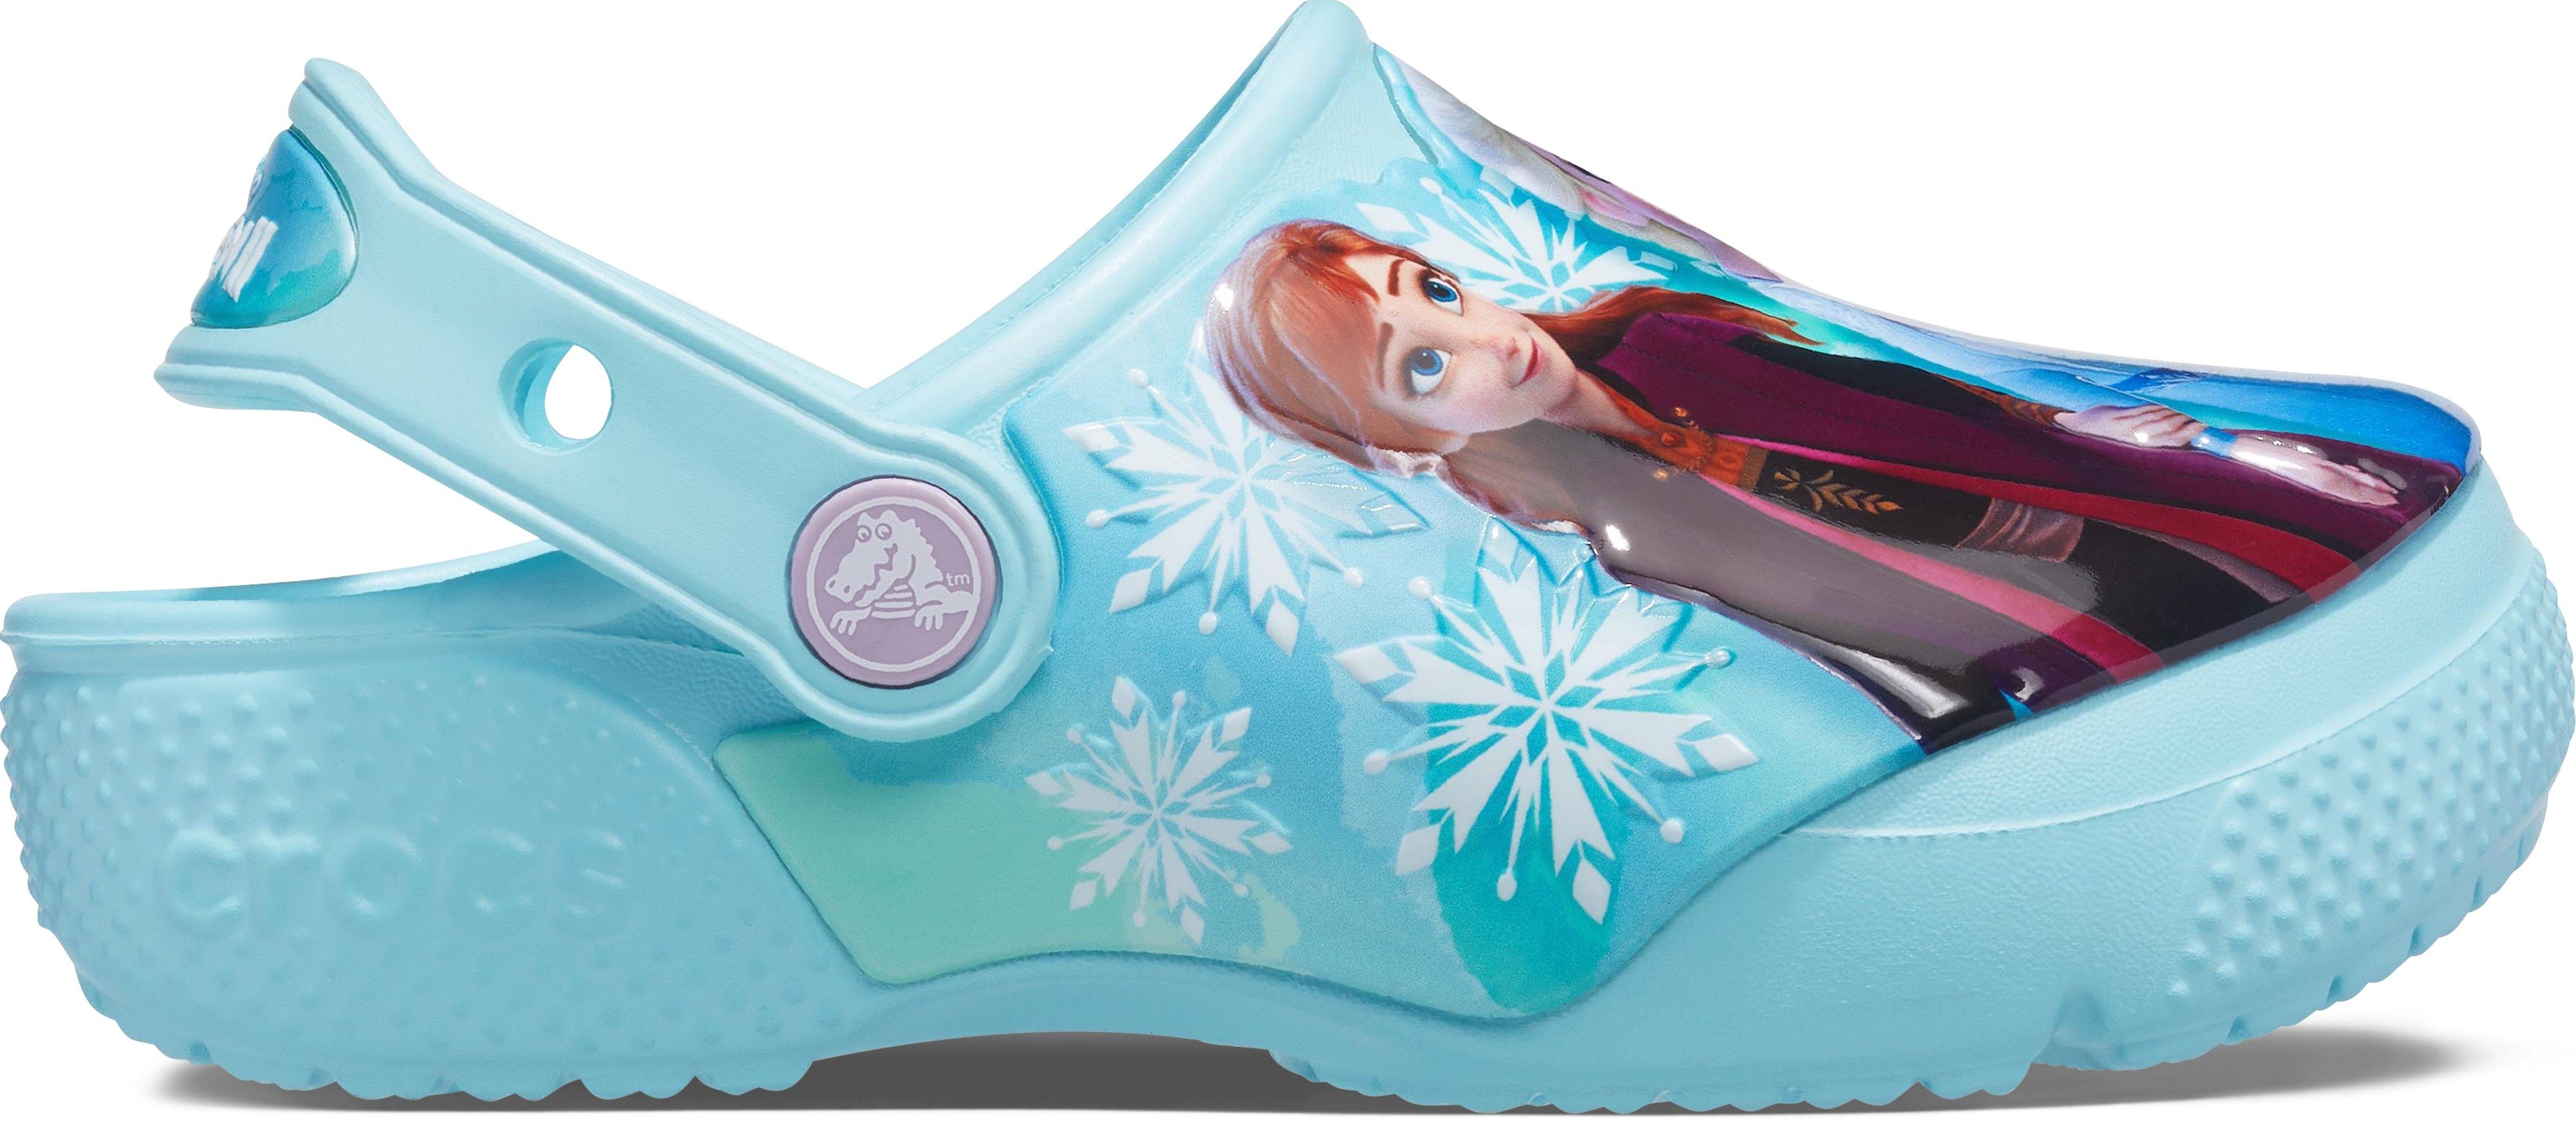 FL aus Disney Crocs Anna" Frozen die Eiskönigin Disney Clog und K 2 "Elsa Clog Motiv mit